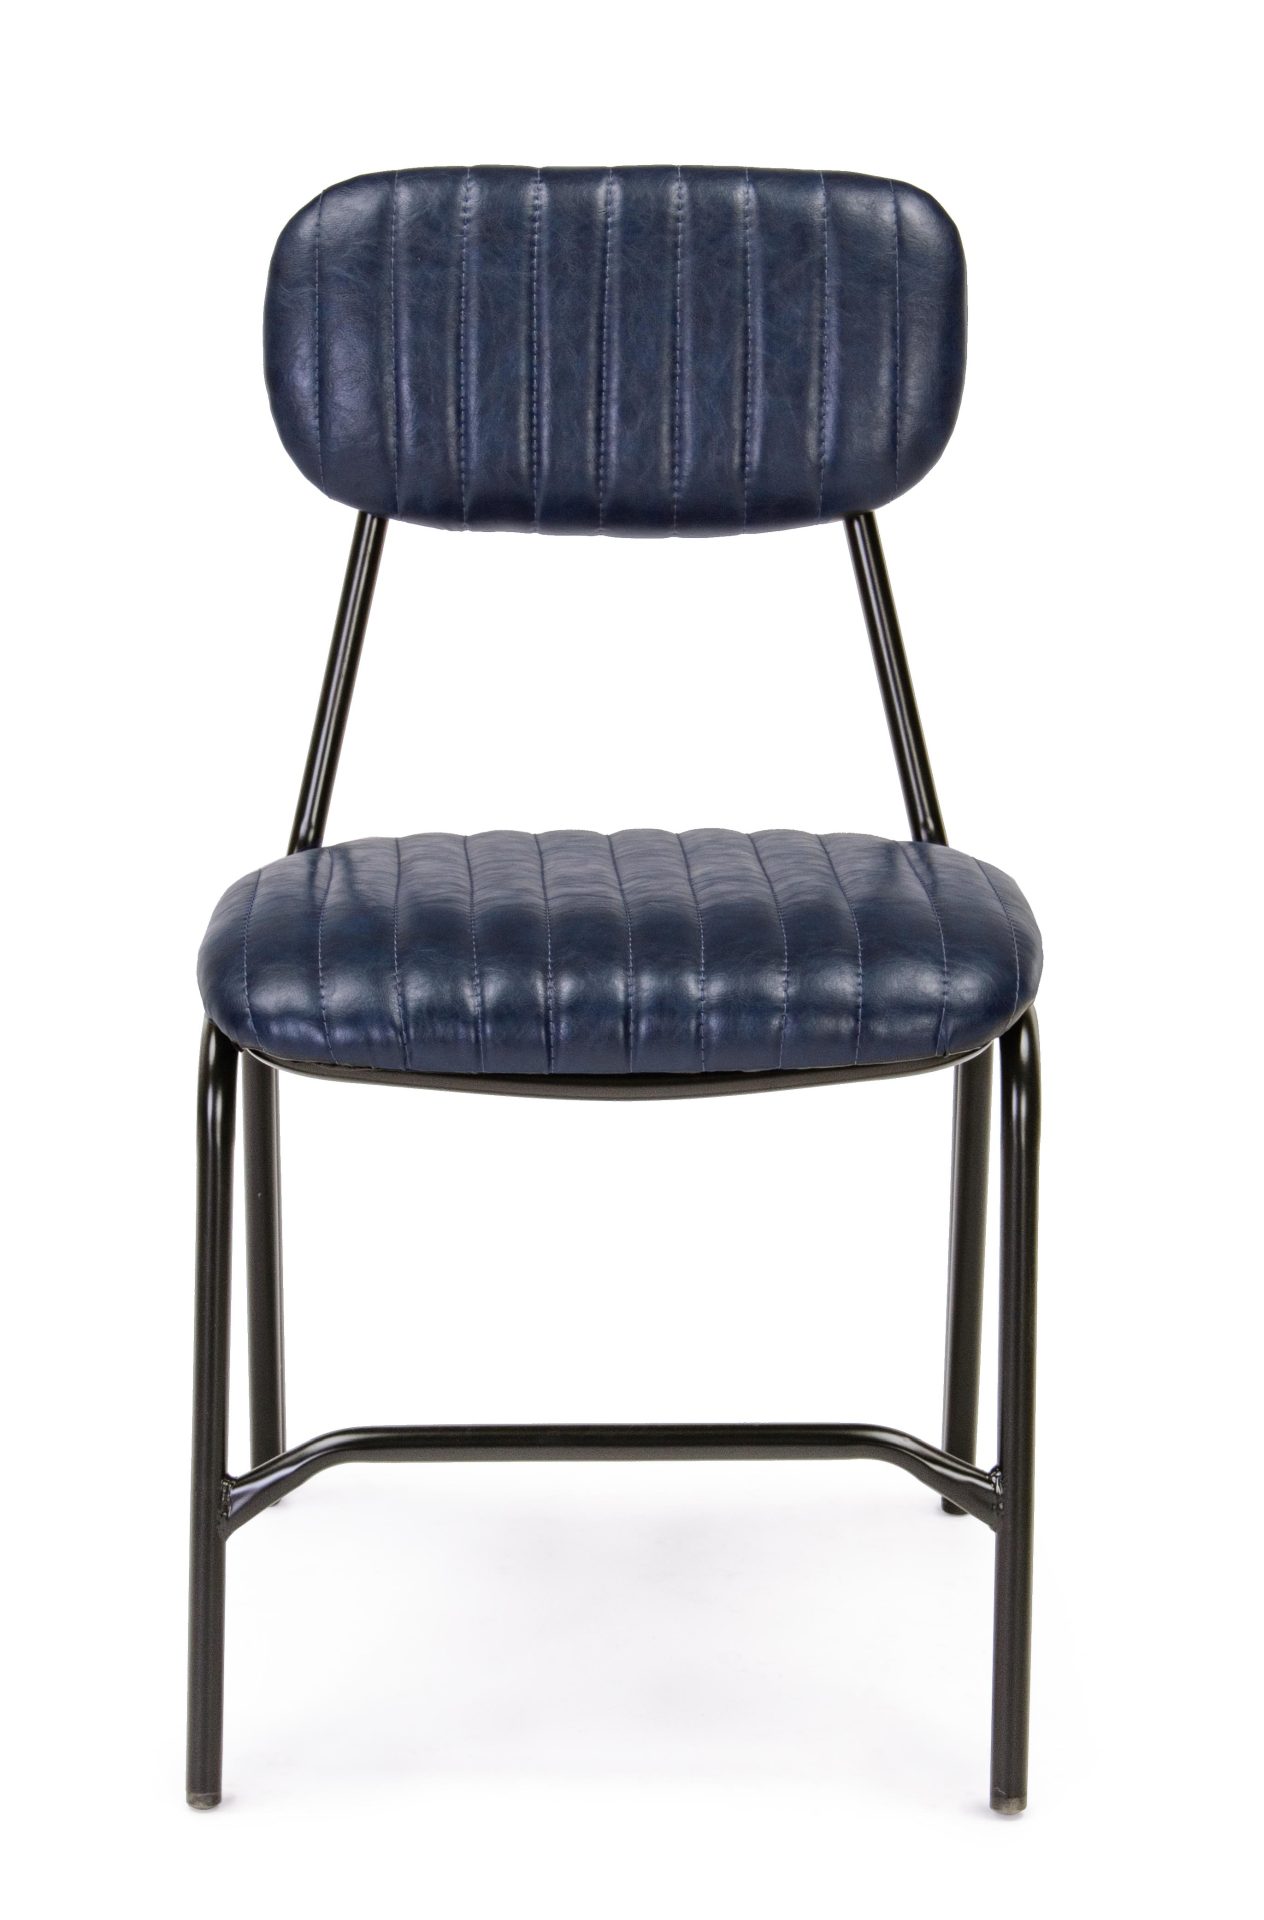 Der Stuhl Debbie überzeugt mit seinem industriellen Design. Gefertigt wurde der Stuhl aus Kunstleder, welches einen blauen Farbton besitzt. Das Gestell ist aus Metall und ist Schwarz. Die Sitzhöhe beträgt 44 cm.